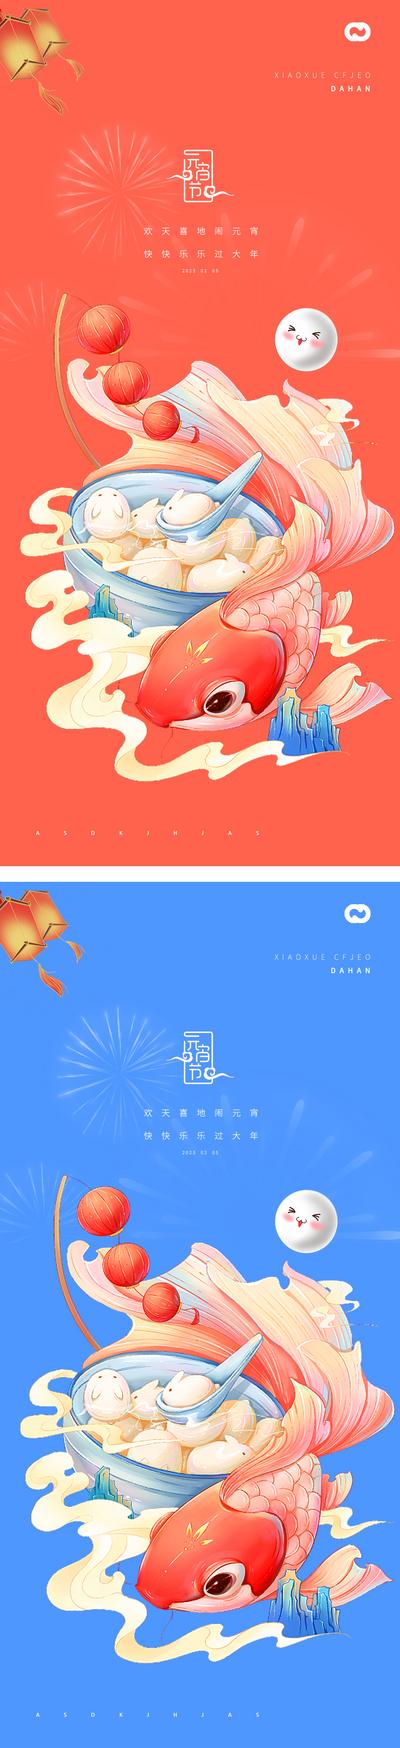 南门网 海报 中国传统节日 春节 元宵节 兔年 国潮 插画 汤圆 锦鲤 鲤鱼 系列